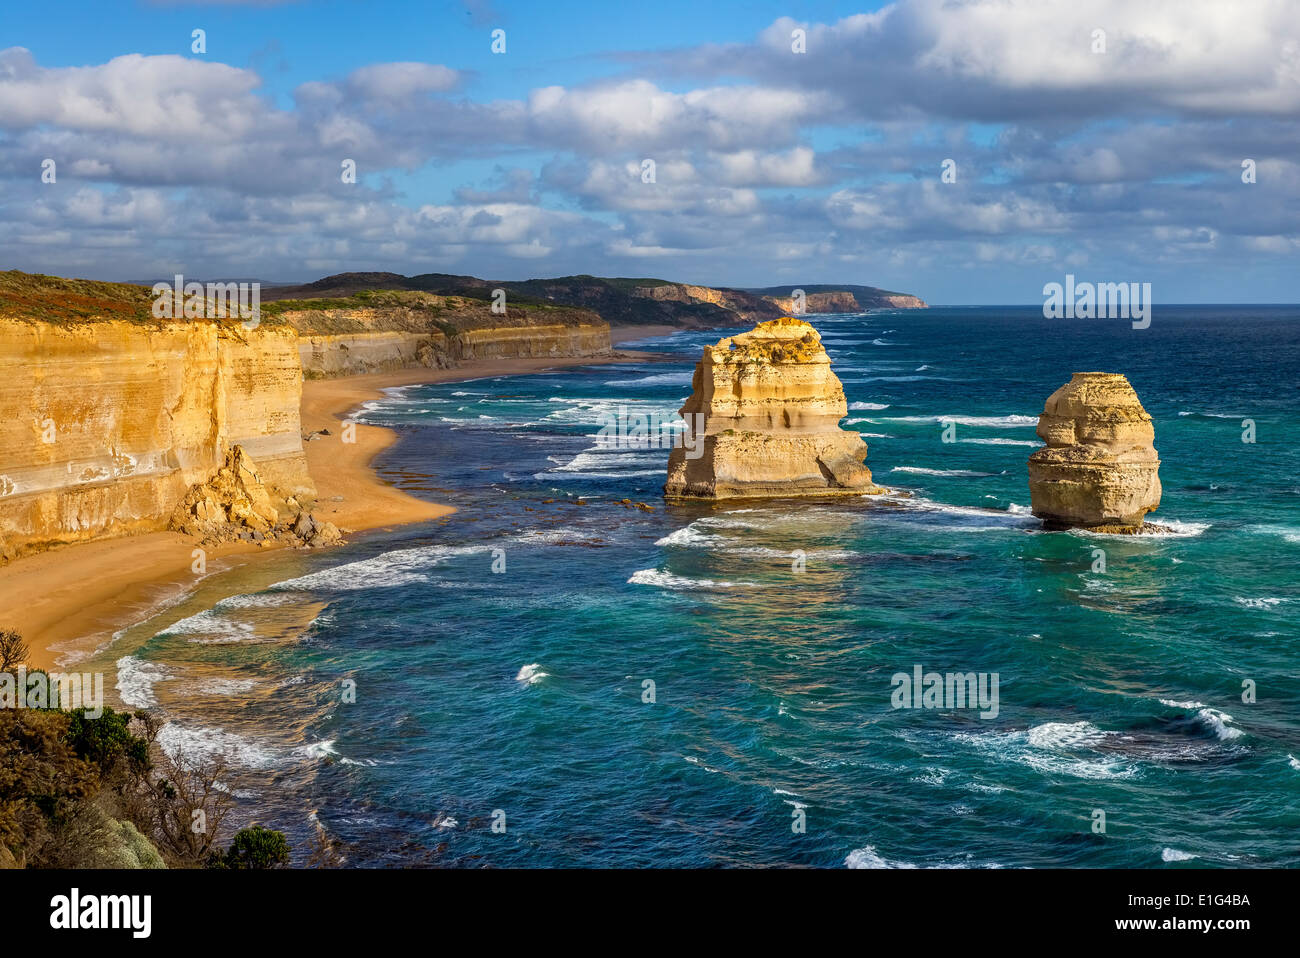 The 12 Apostles Rock Formation, Victoria, Australia Stock Photo